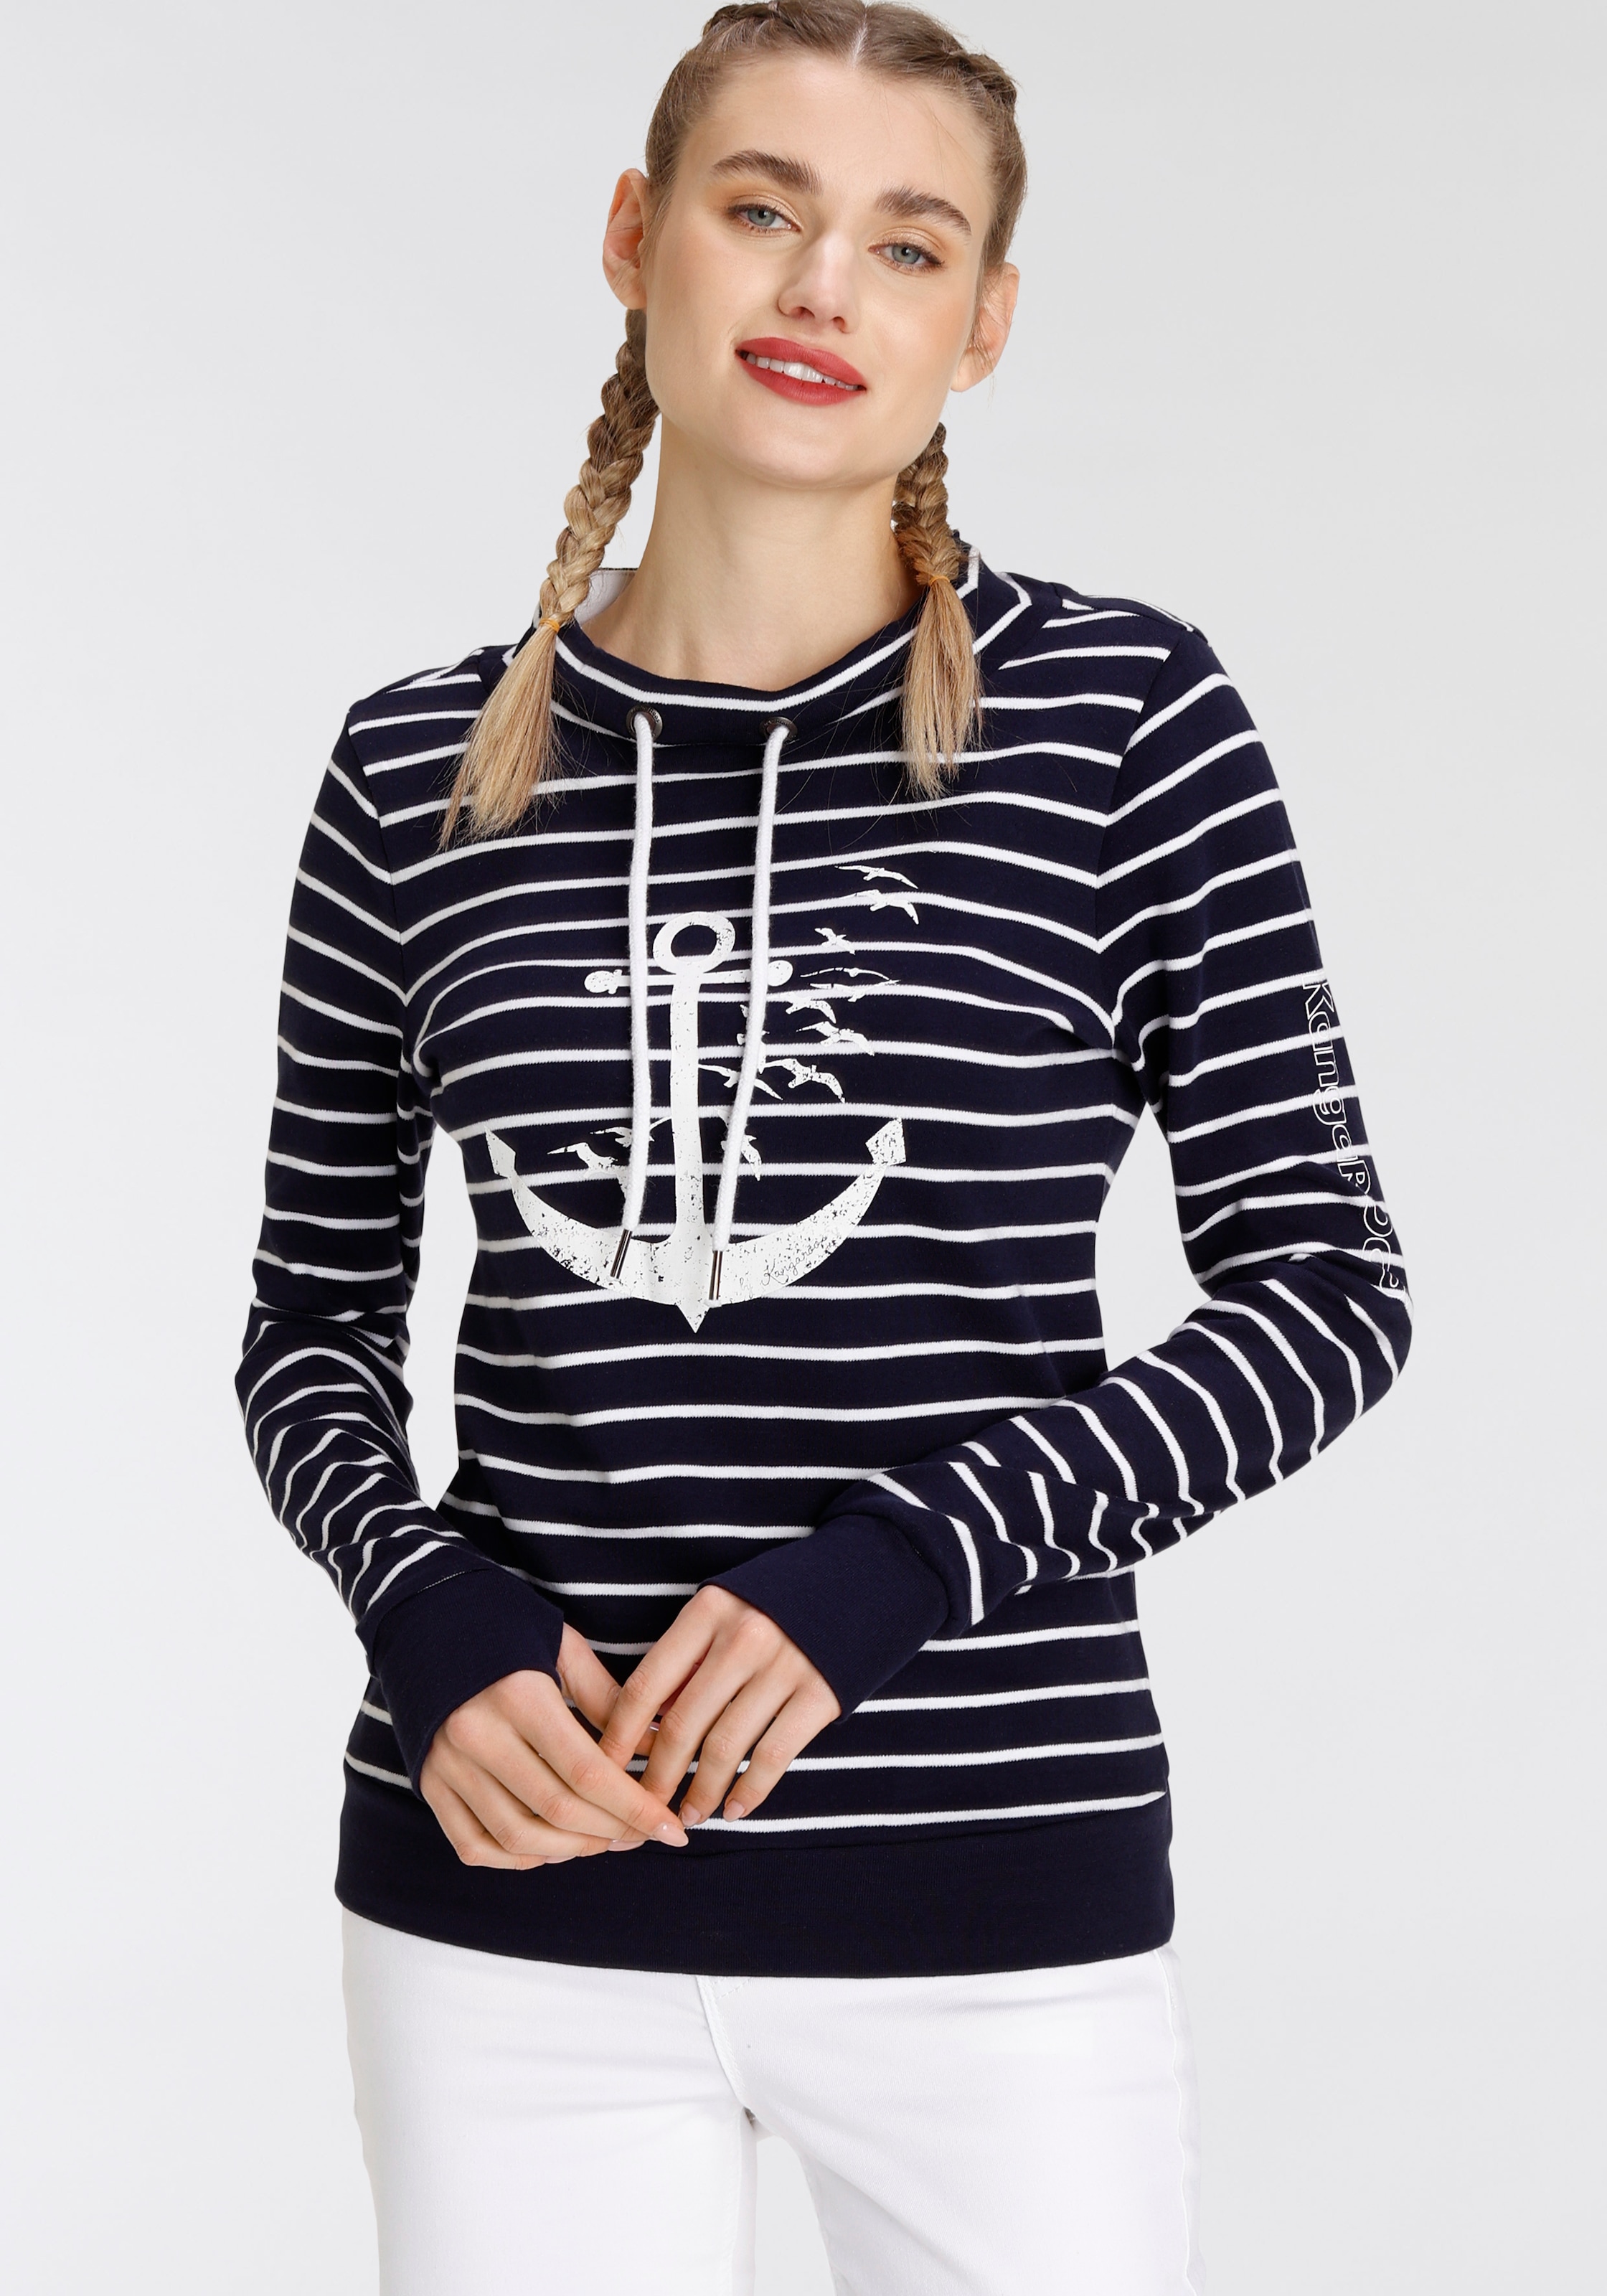 KangaROOS Sweatshirt, mit sportlichem Stehkragen und maritimen Druck  shoppen